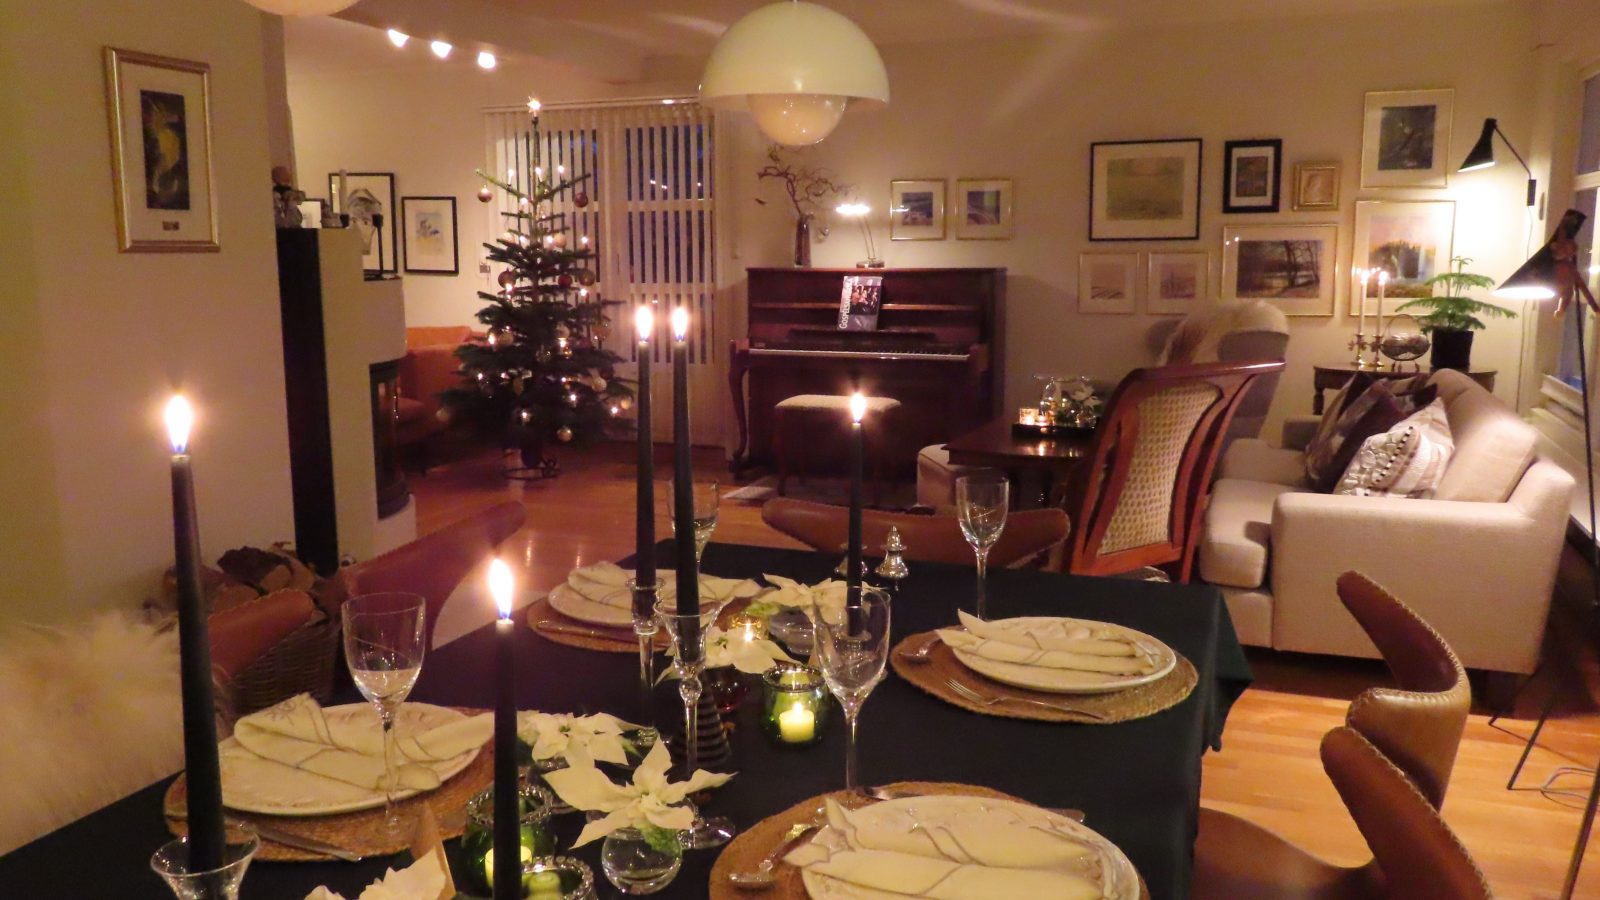 Vakker og stemningsfull borddekking med hvite julestjerner - hele stuen